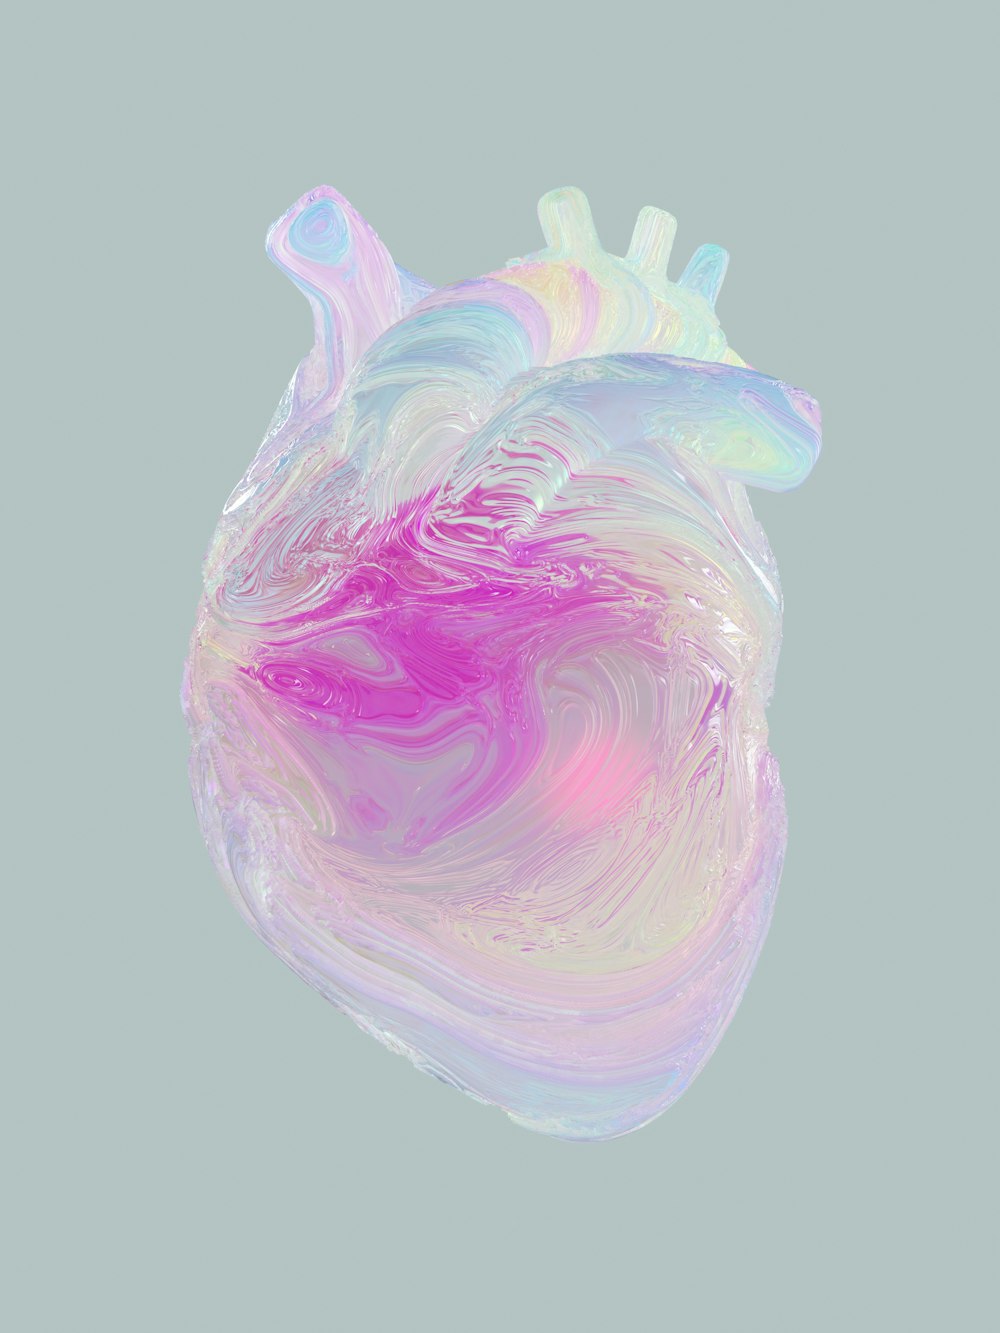 un objet en forme de cœur avec un tourbillon rose et bleu